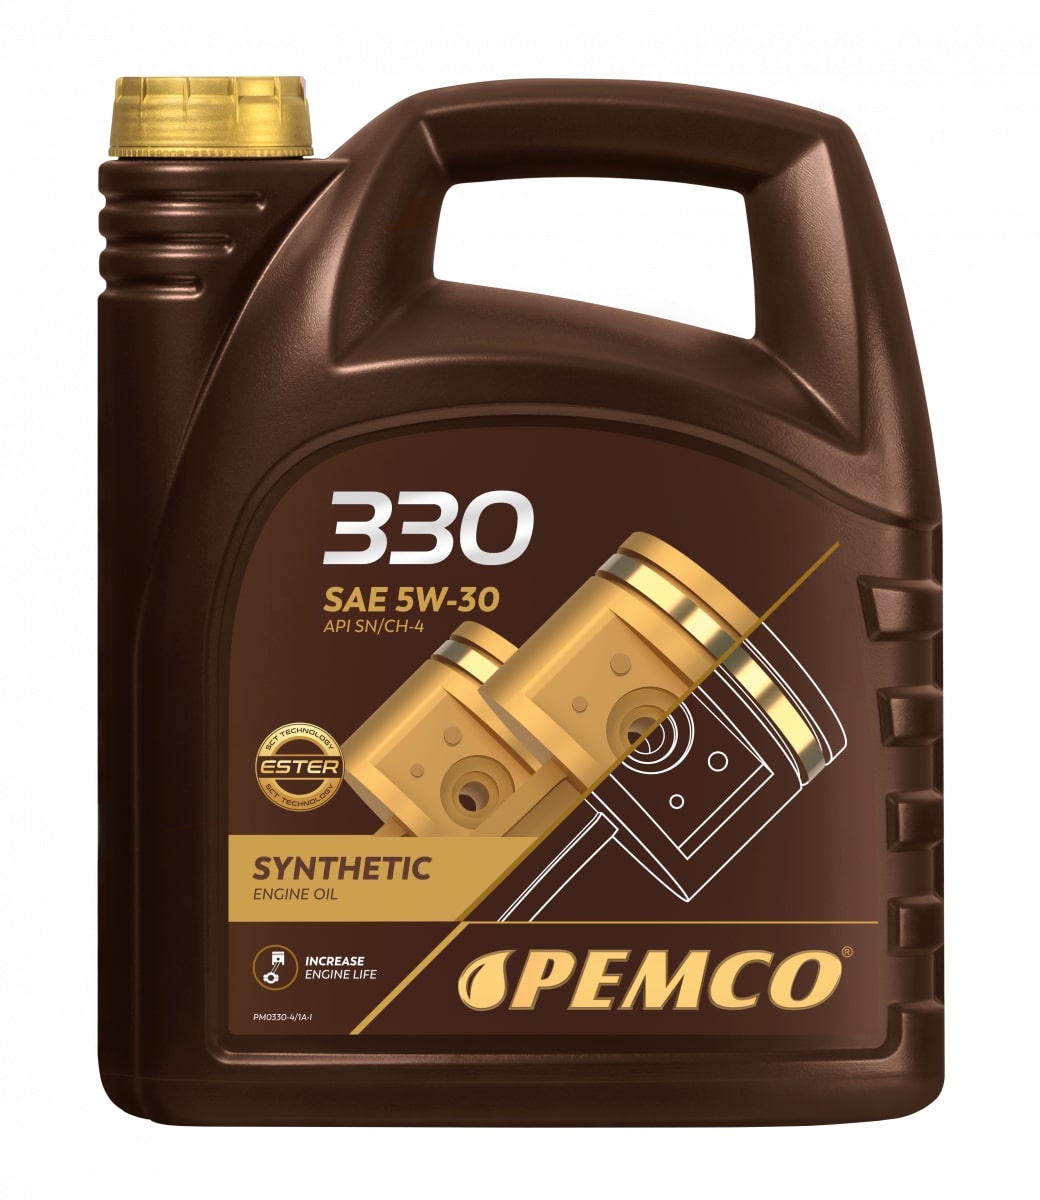  PEMCO 330 5W-30